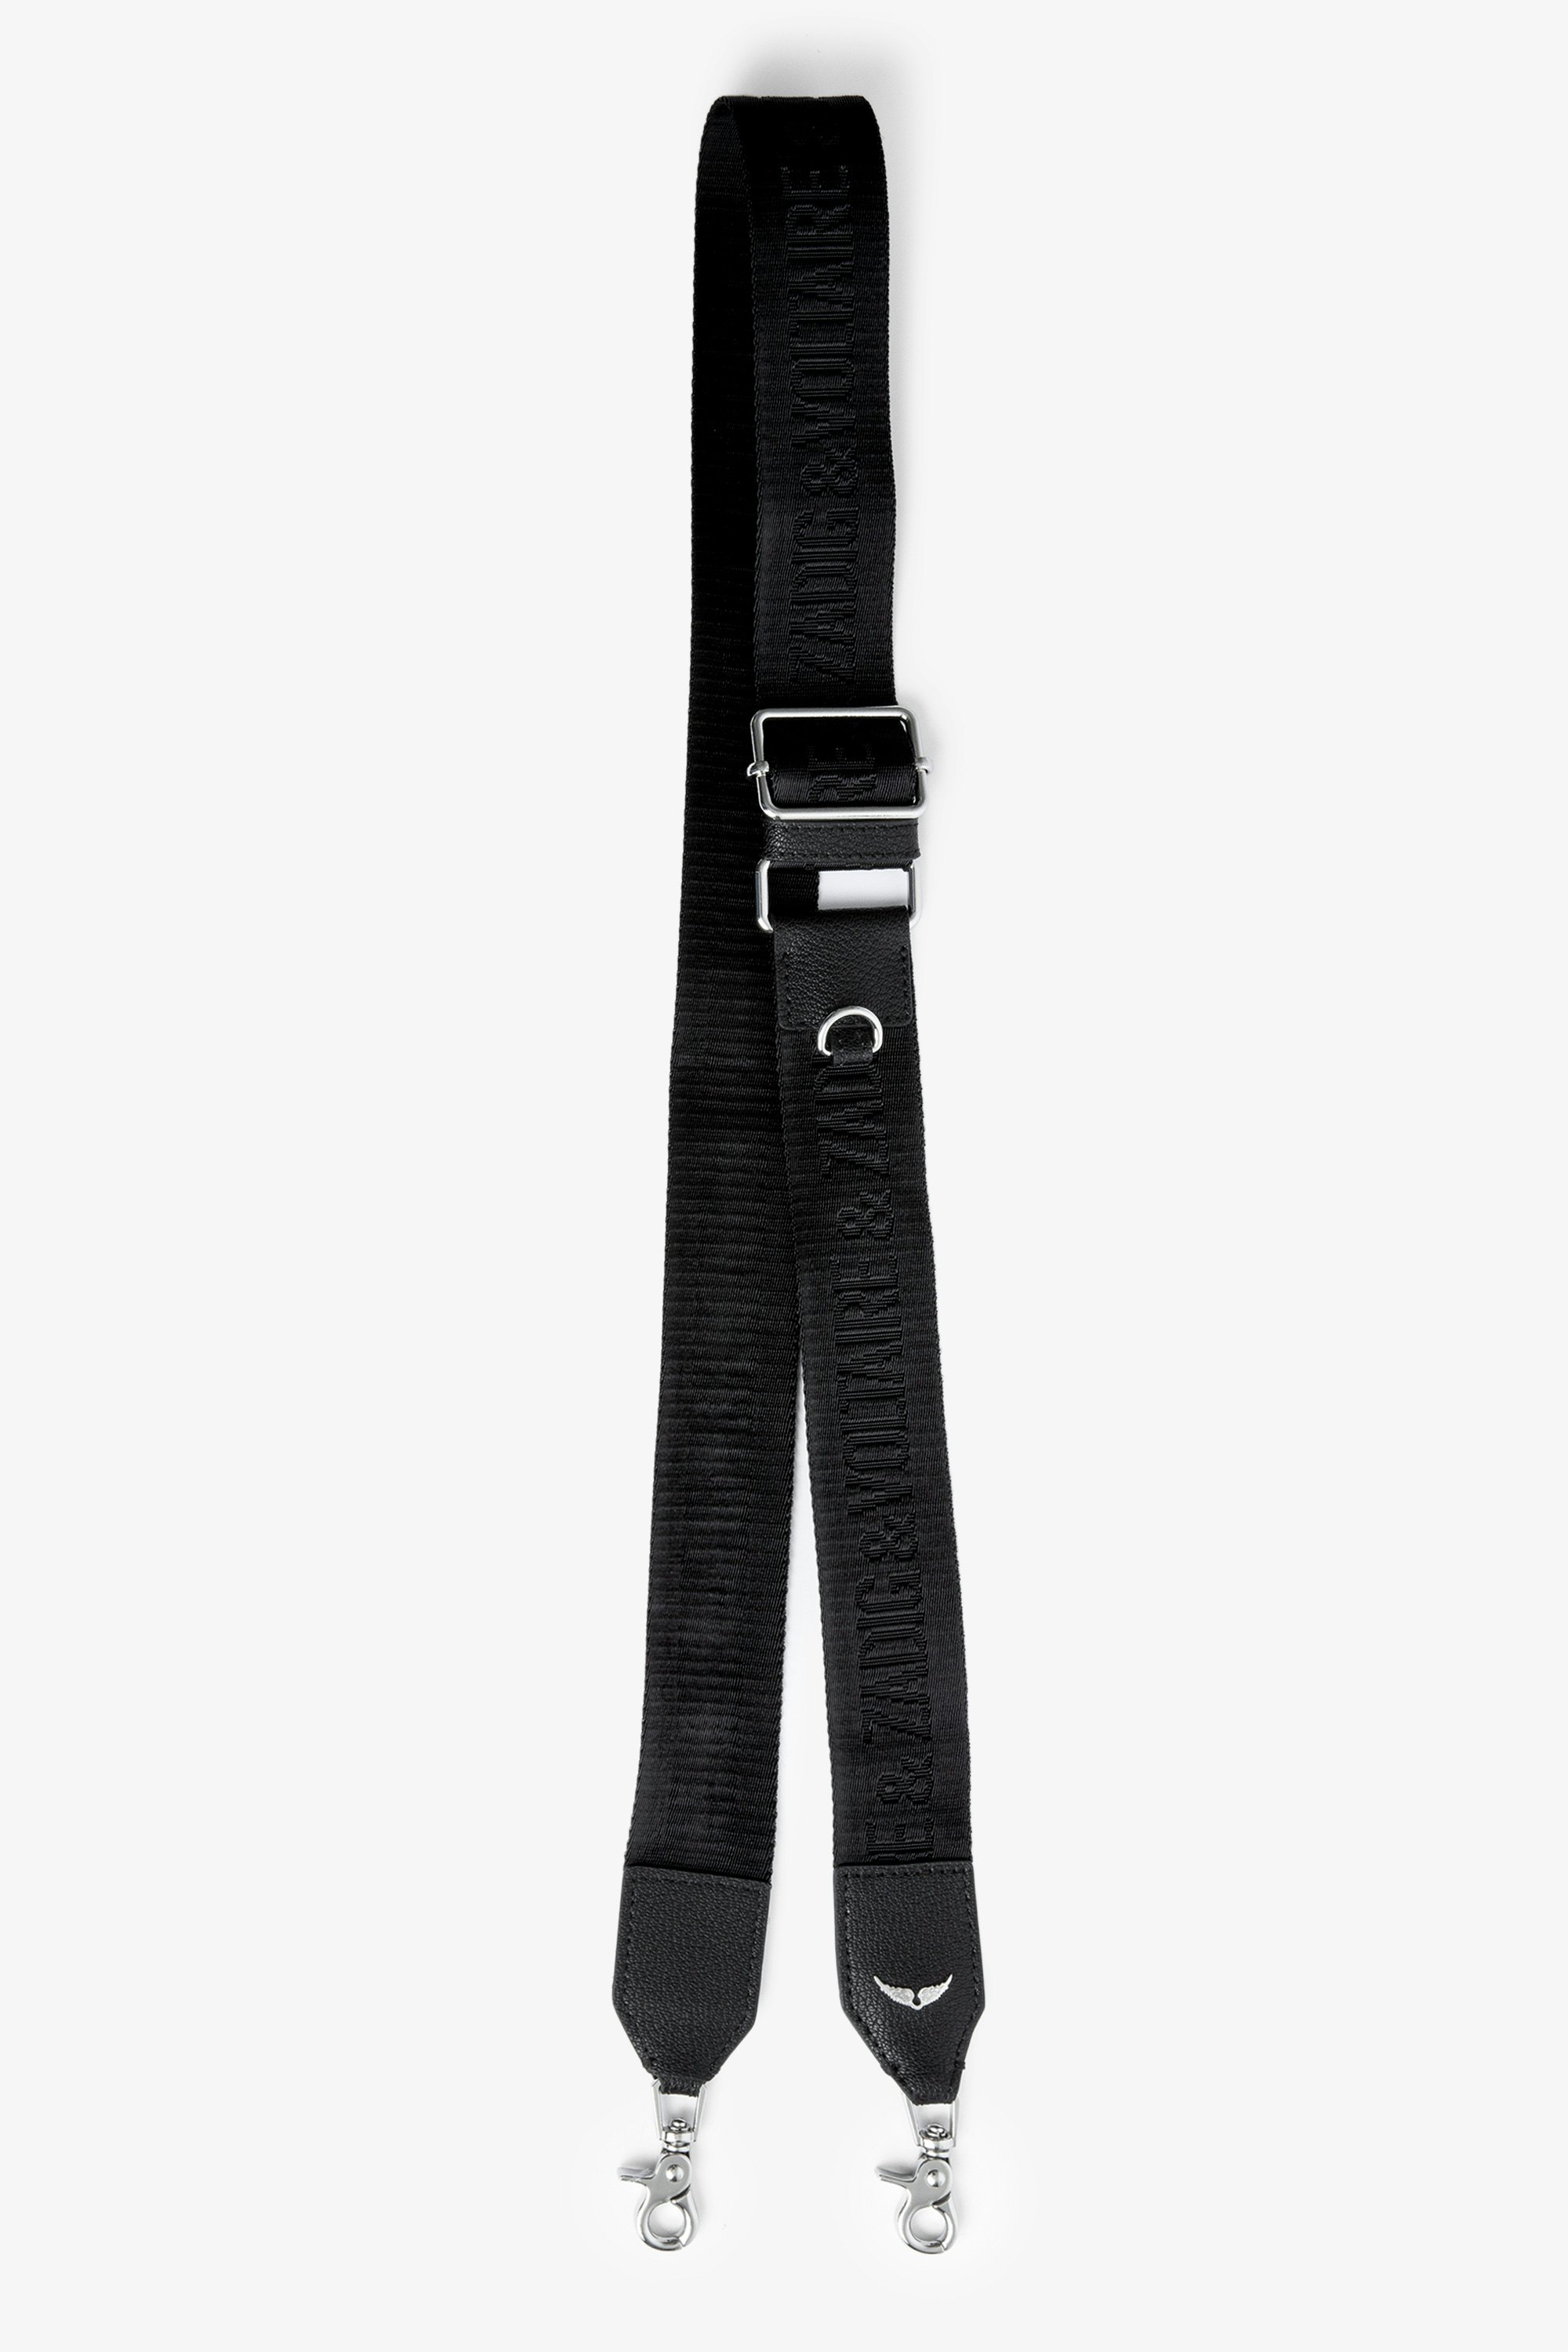 Zadig ストラップ Black leather shoulder strap